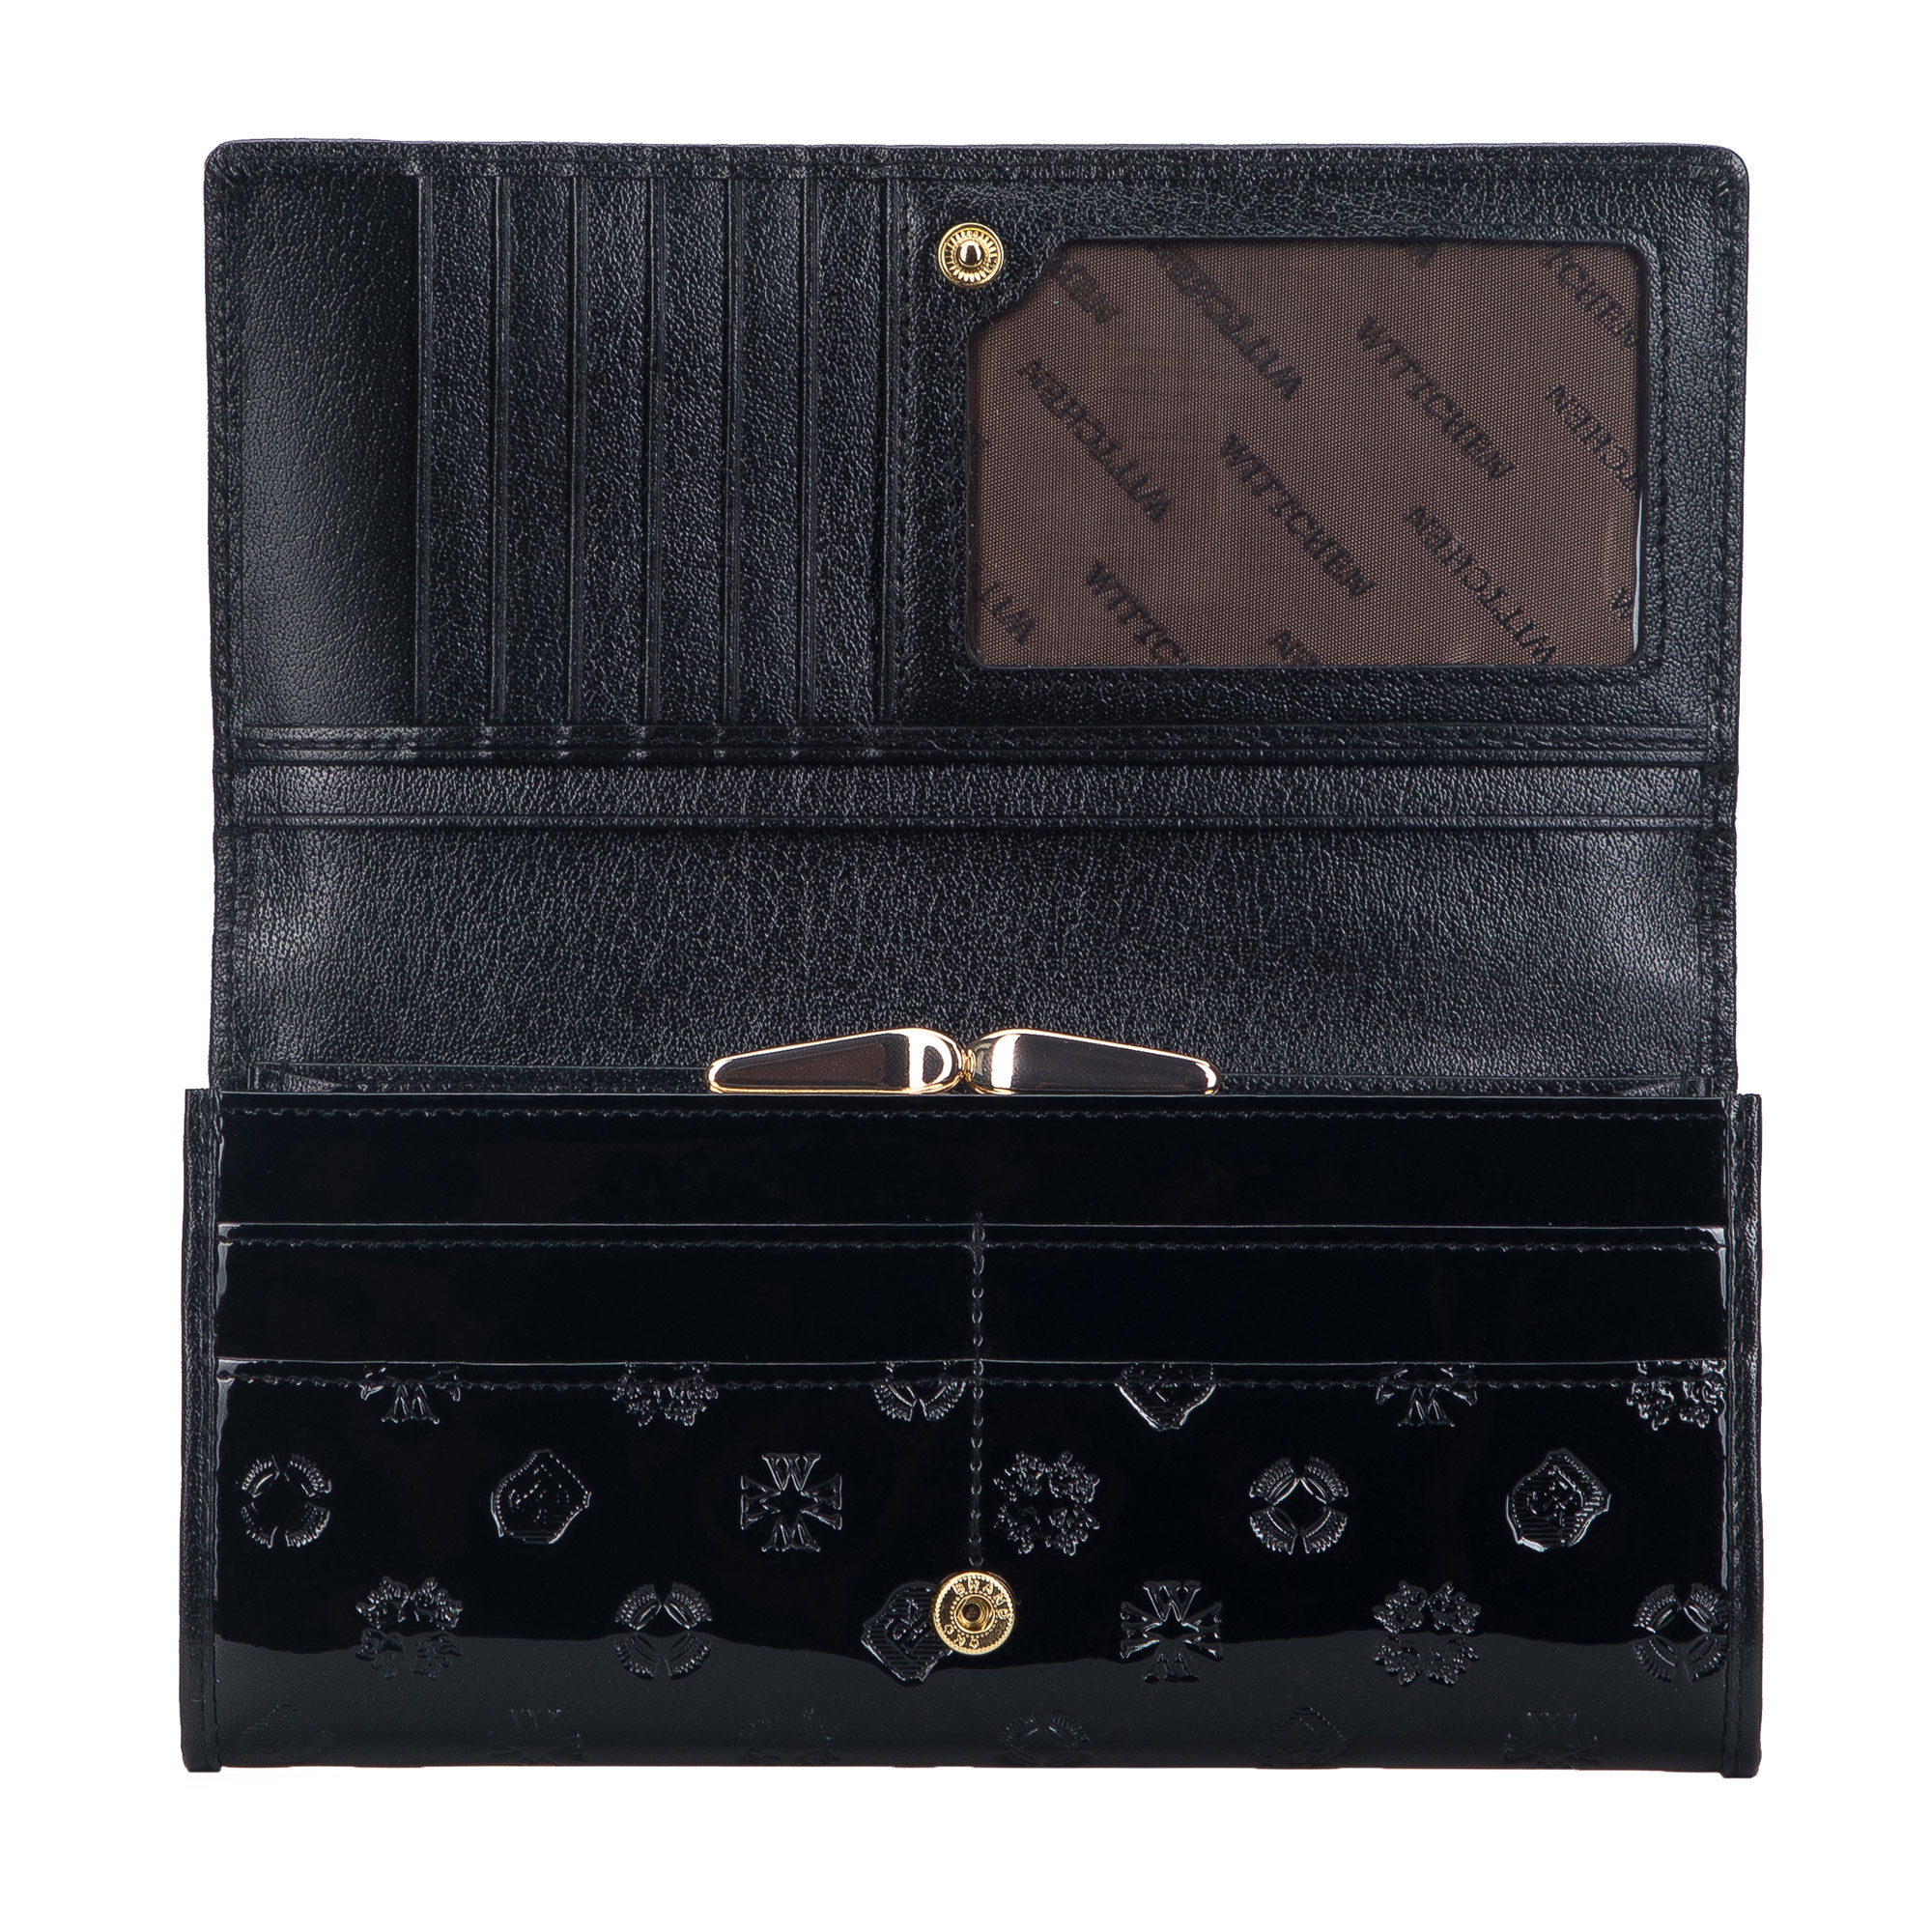 Dámska kožená peňaženka s reliéfom monogramu 34-1-075-111